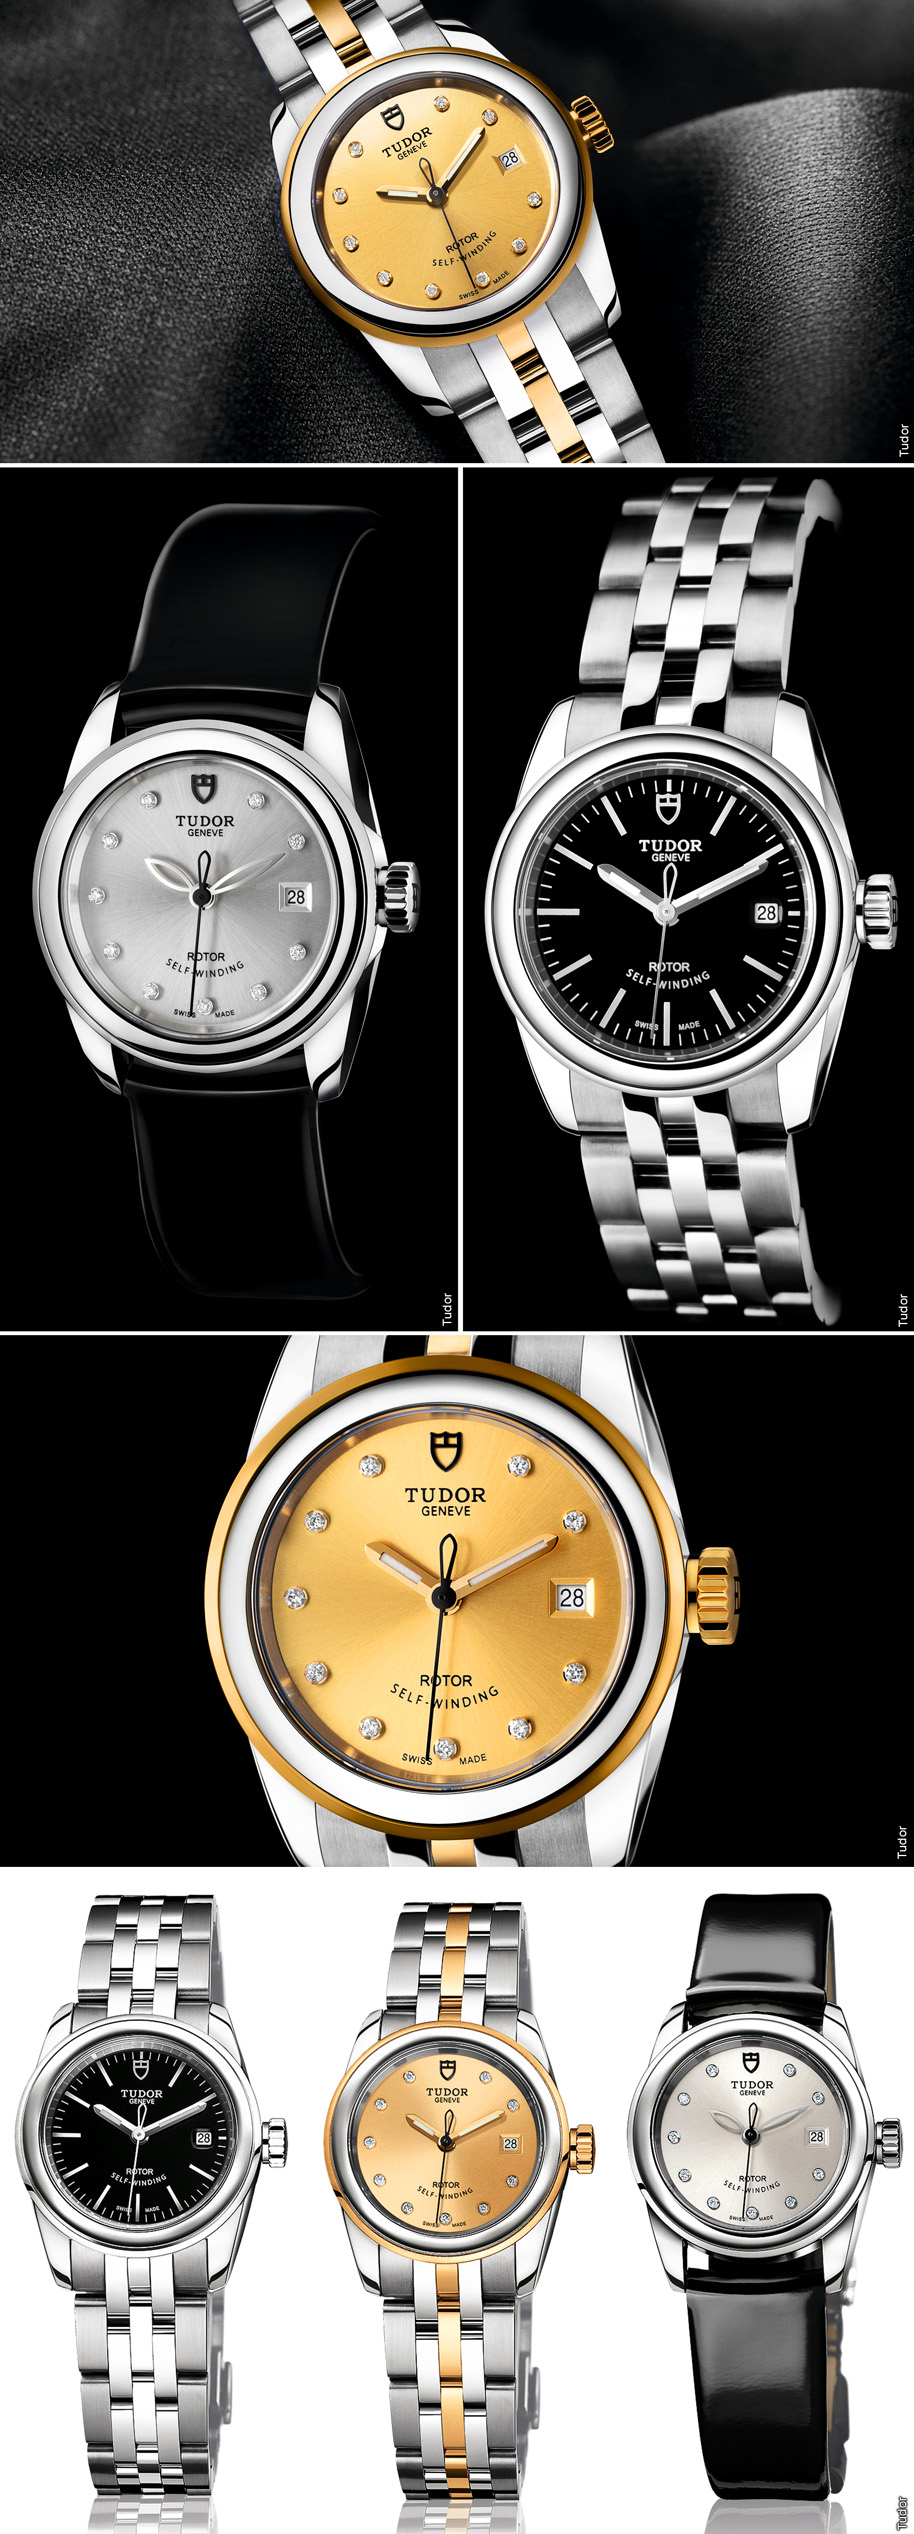 Tudor-Watches